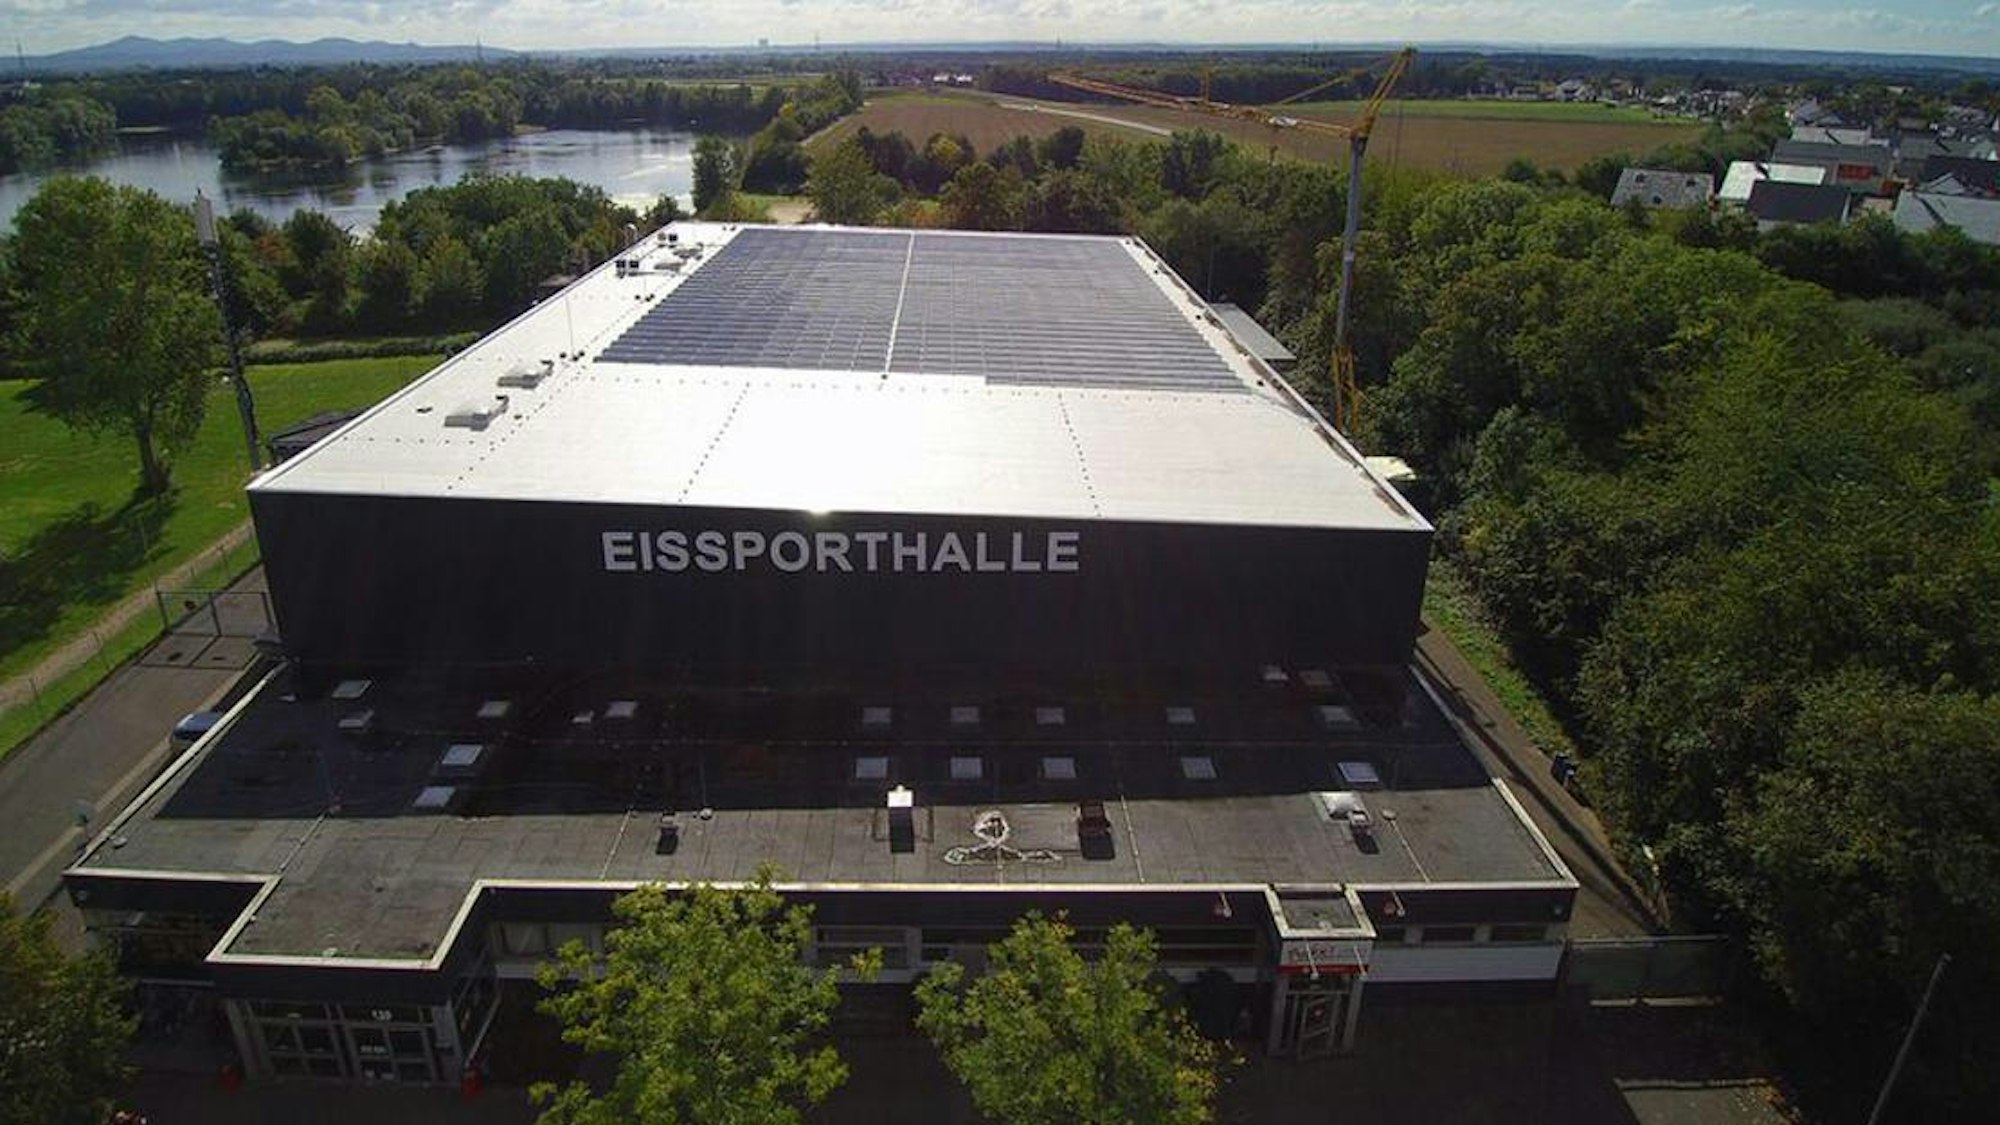 Eissporthalle in Troisdorf von außen aus der Luft